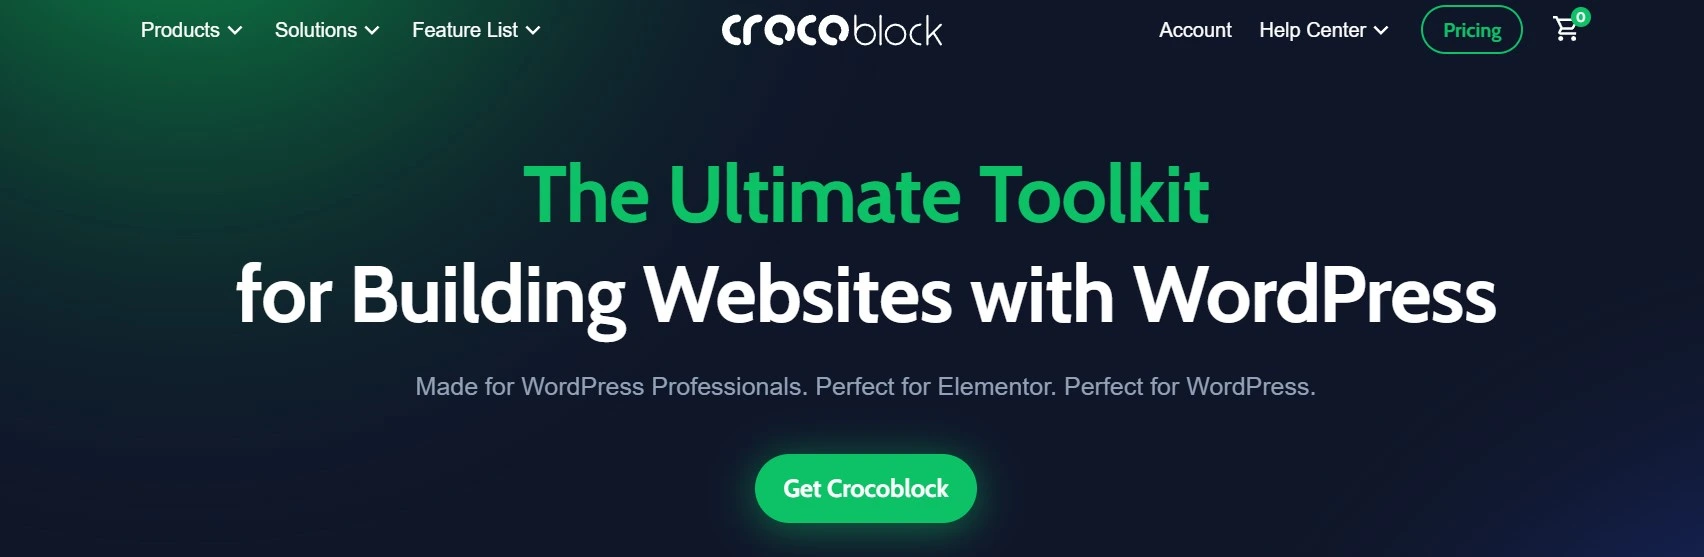 Crocoblock Is A Great Plugin For Agencies